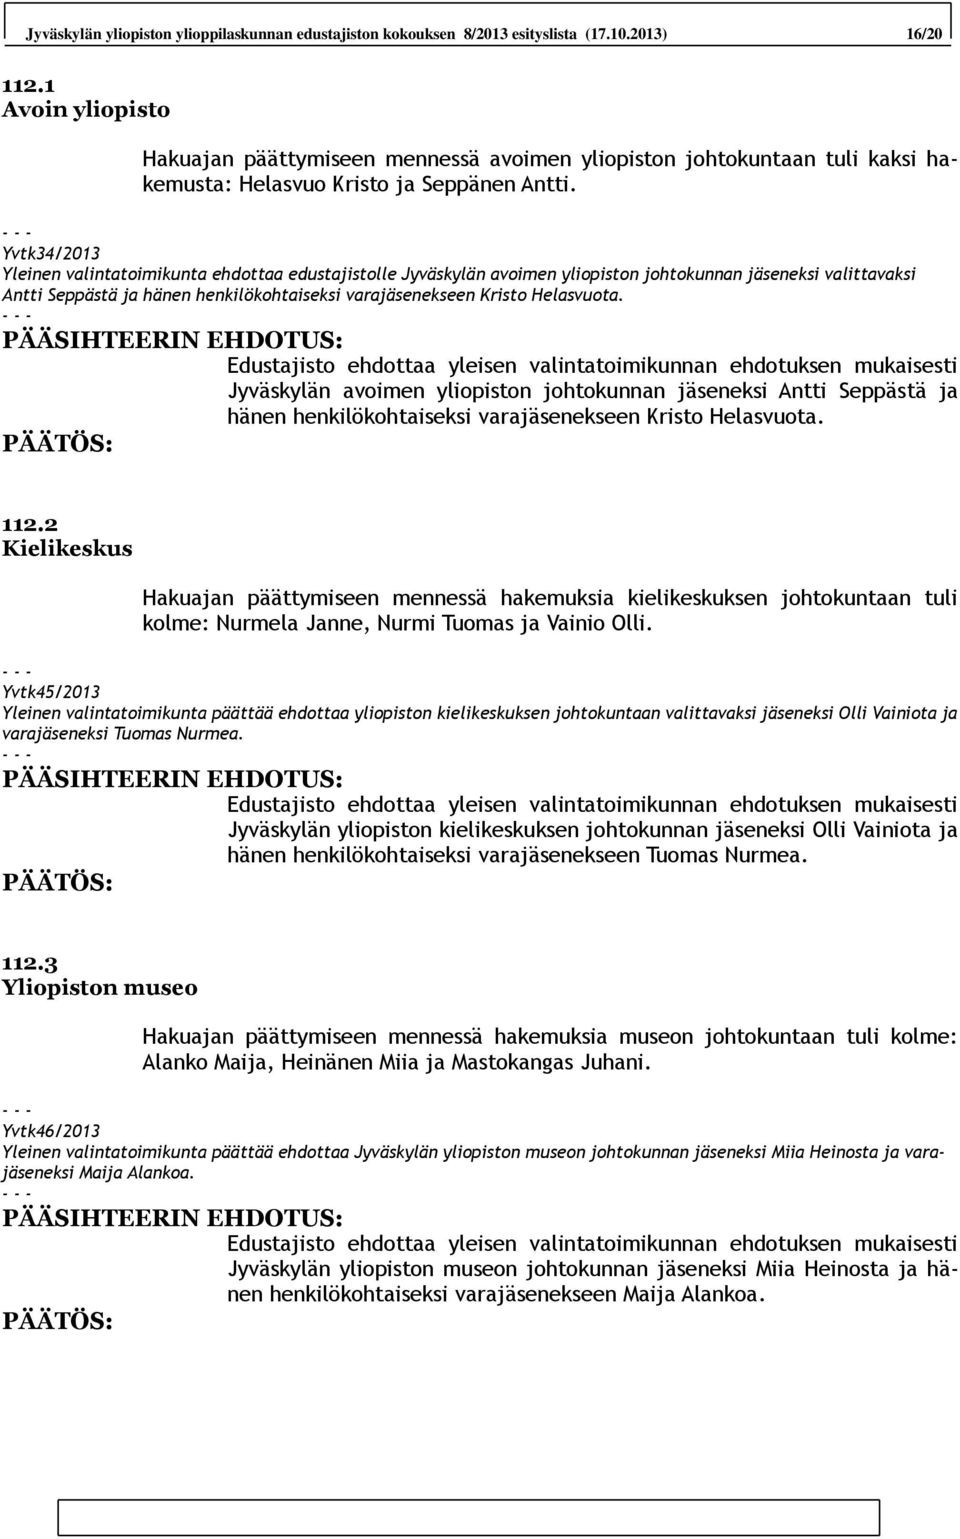 Yvtk34/2013 Yleinen valintatoimikunta ehdottaa edustajistolle Jyväskylän avoimen yliopiston johtokunnan jäseneksi valittavaksi Antti Seppästä ja hänen henkilökohtaiseksi varajäsenekseen Kristo